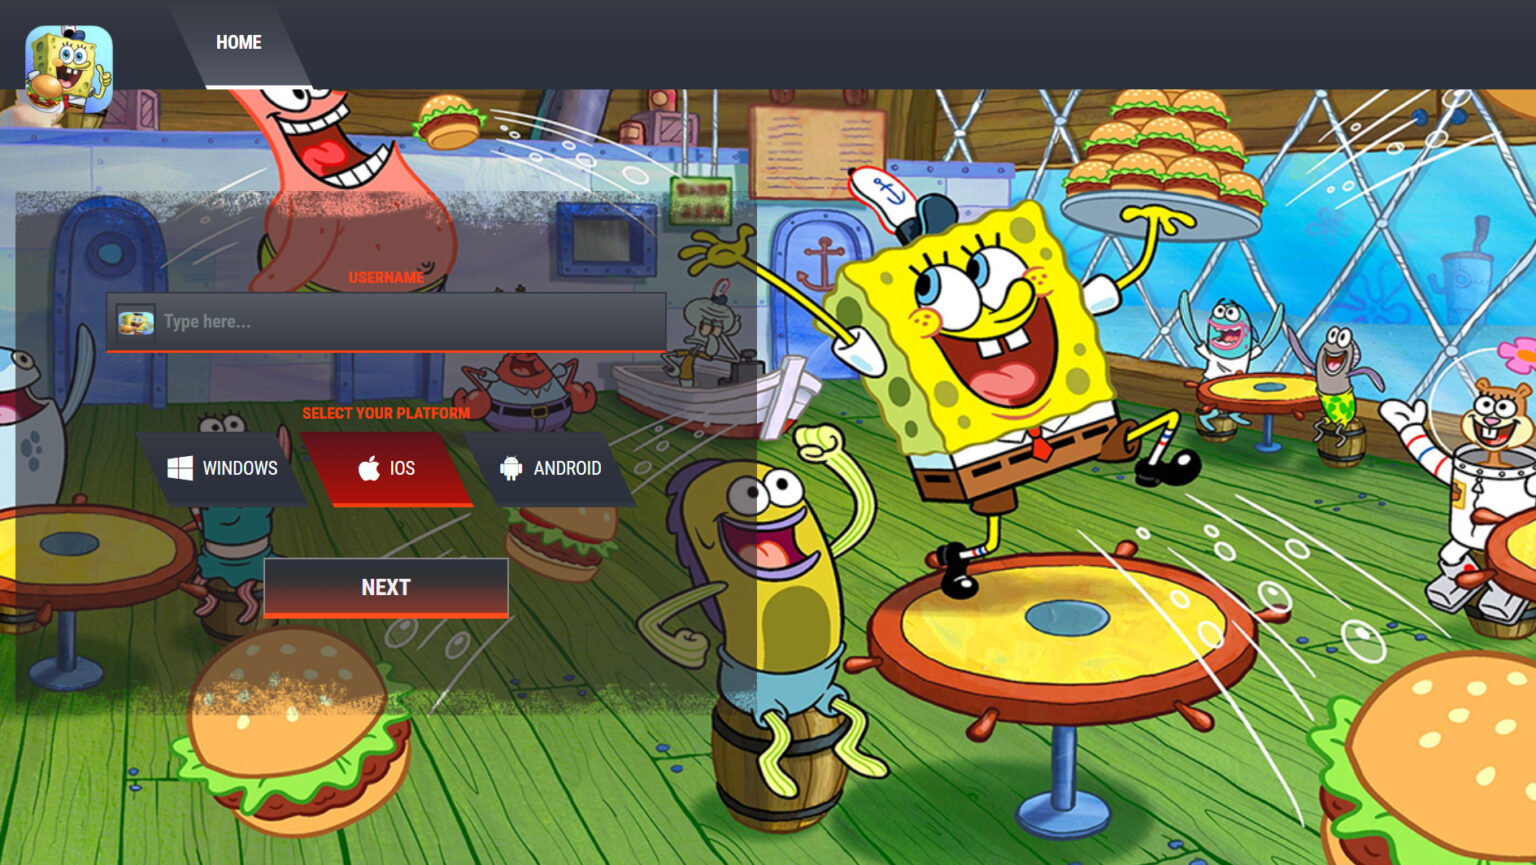 spongebob krusty cook-off gameplay